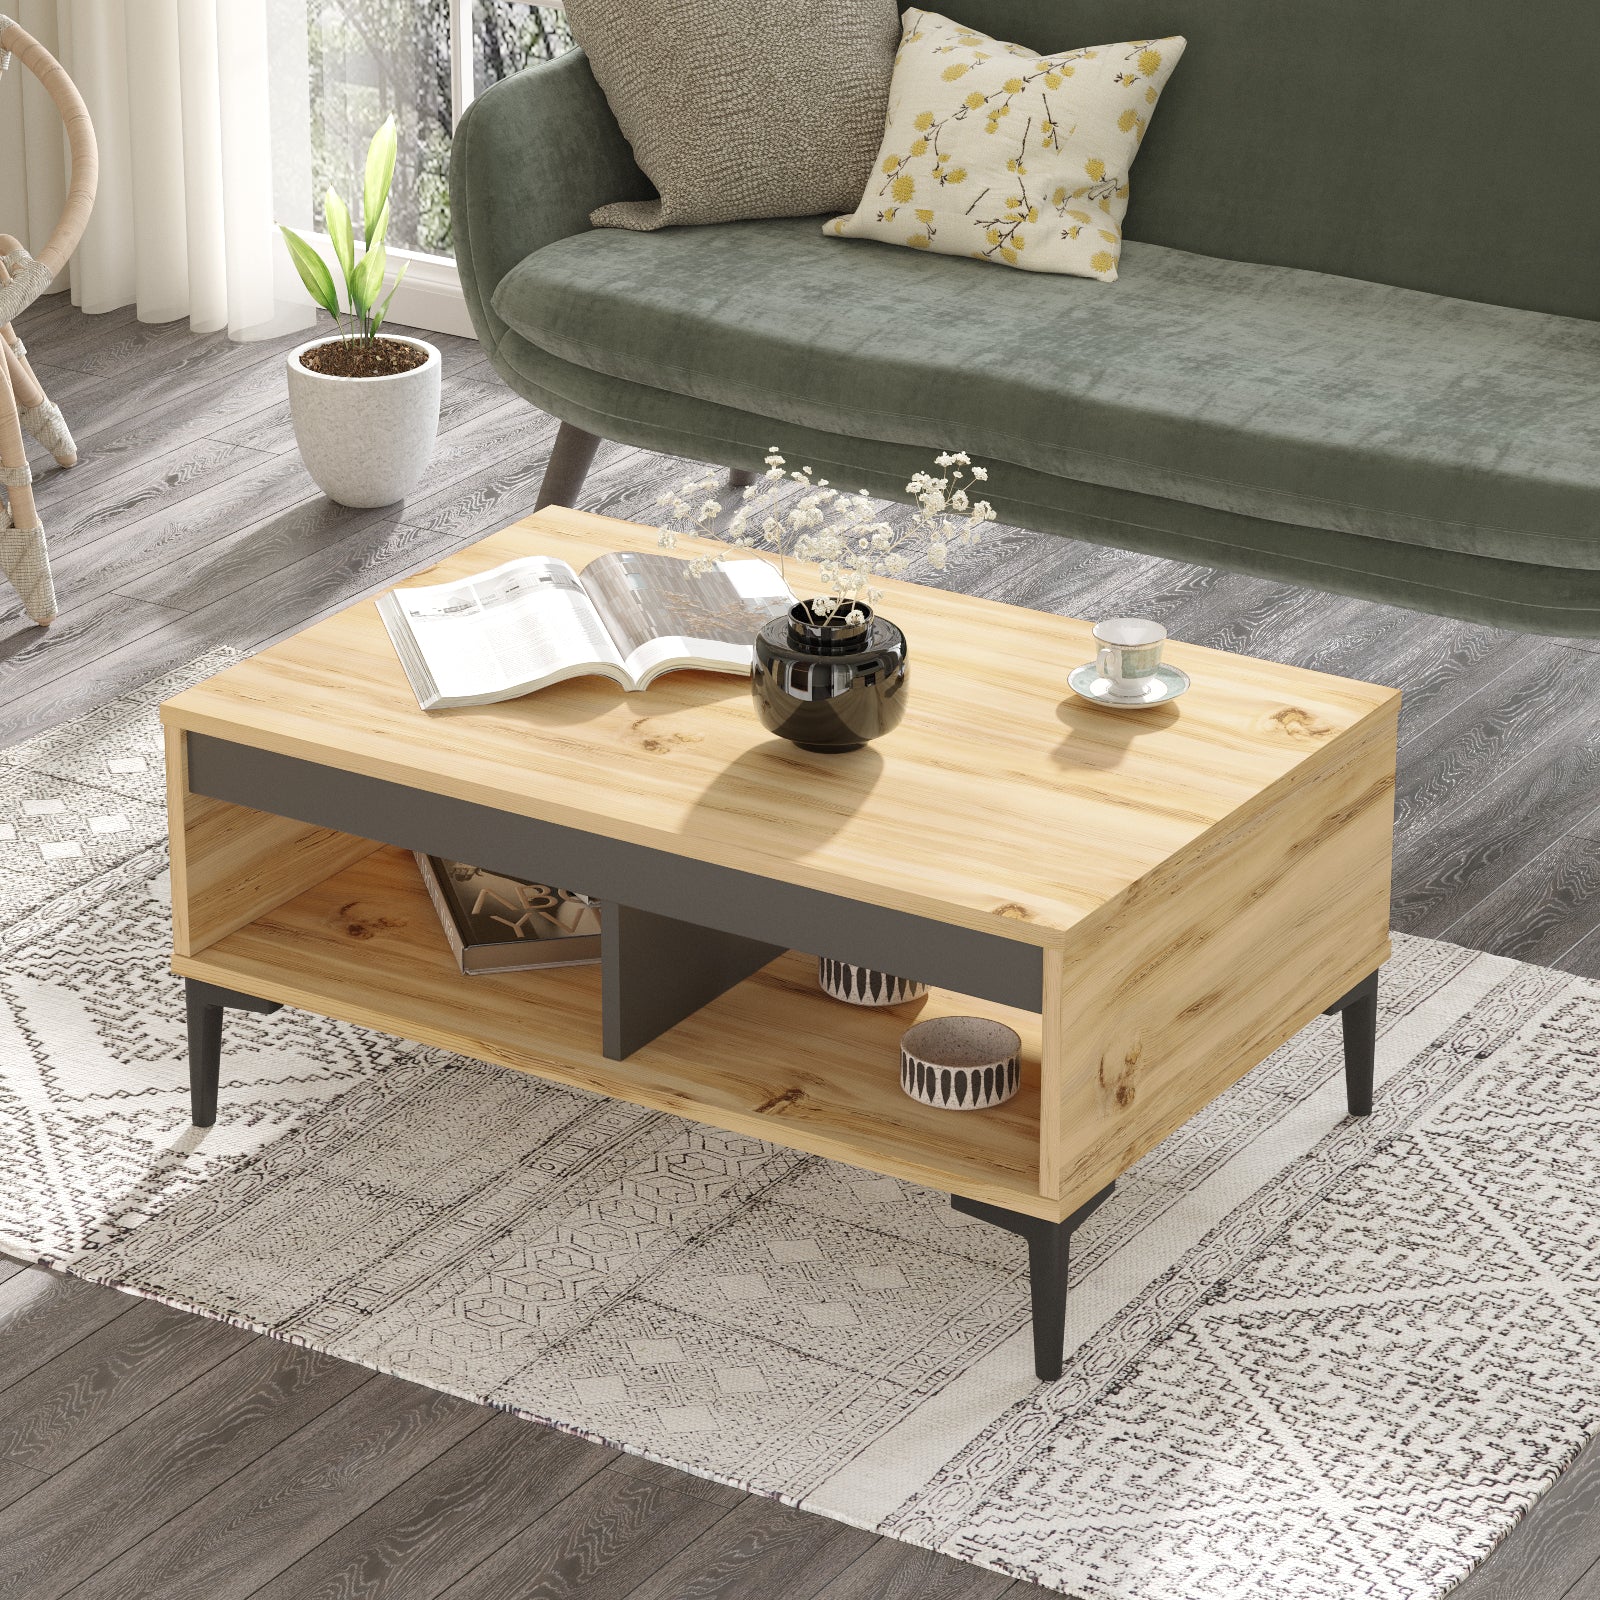 Design intérieur avec table basse 'ALIZÉ' en bois clair ajoutant une touche moderne chez LeBoMeuble